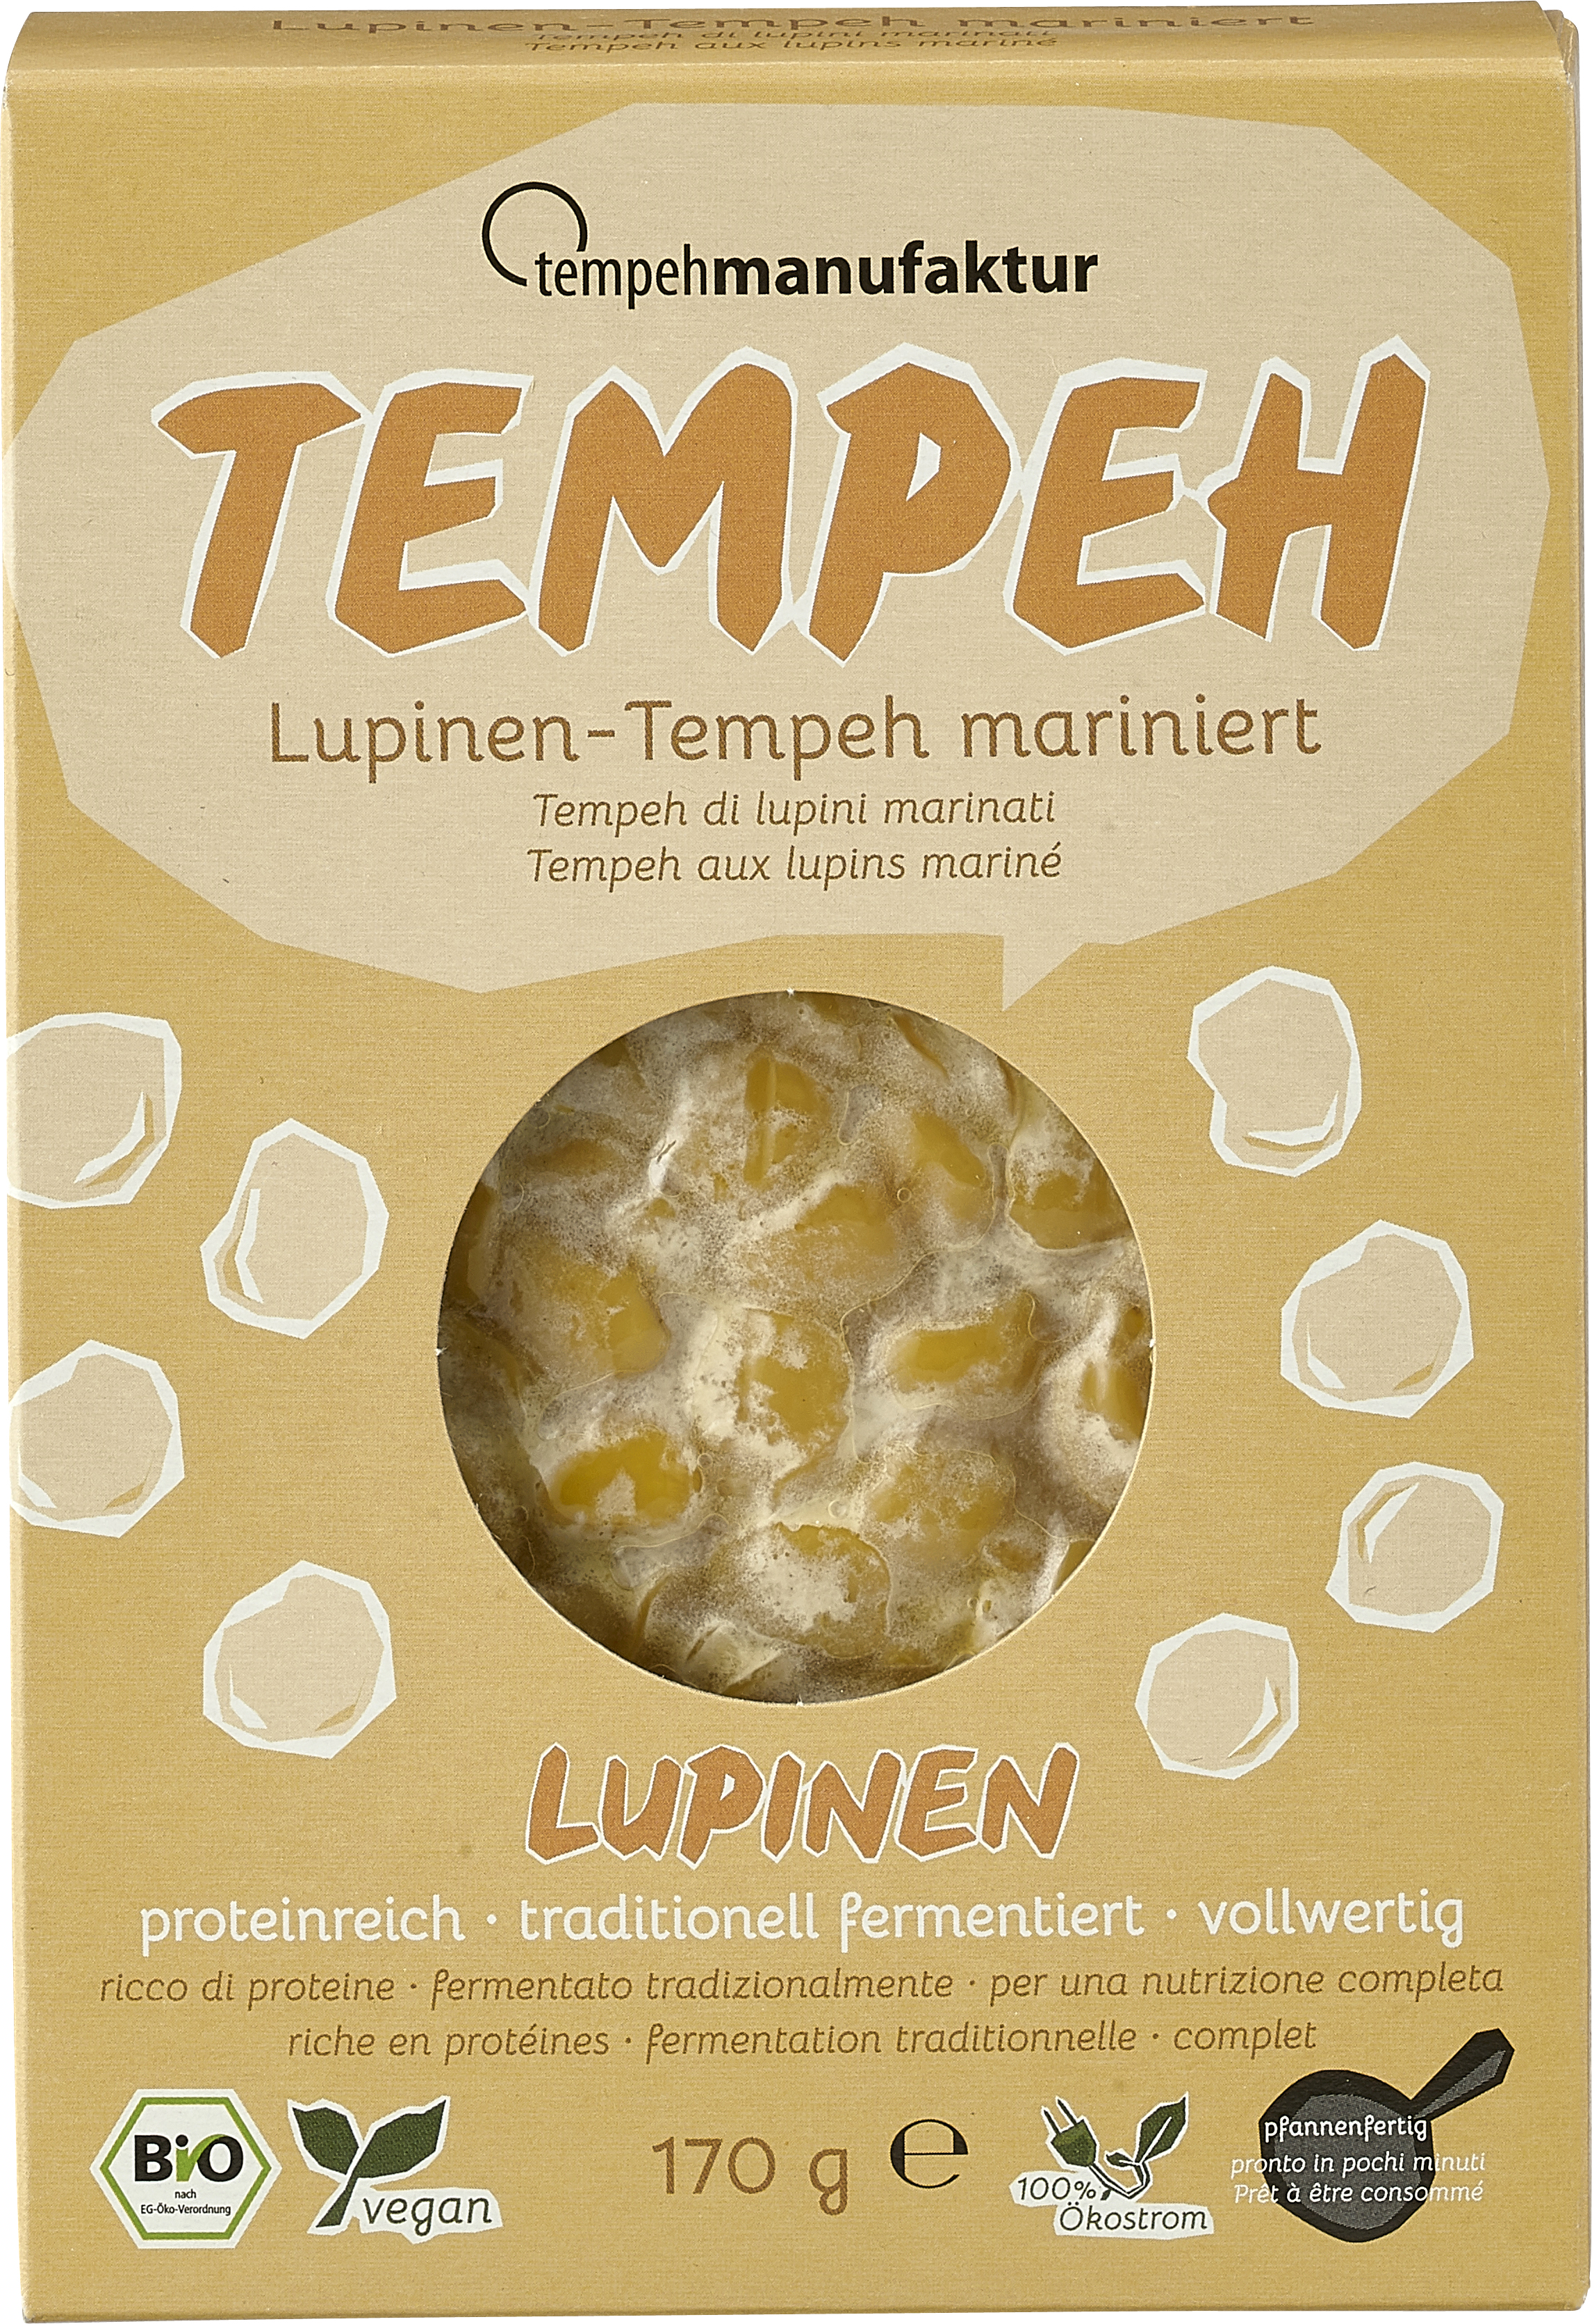 Lupinen-Tempeh (mariniert)